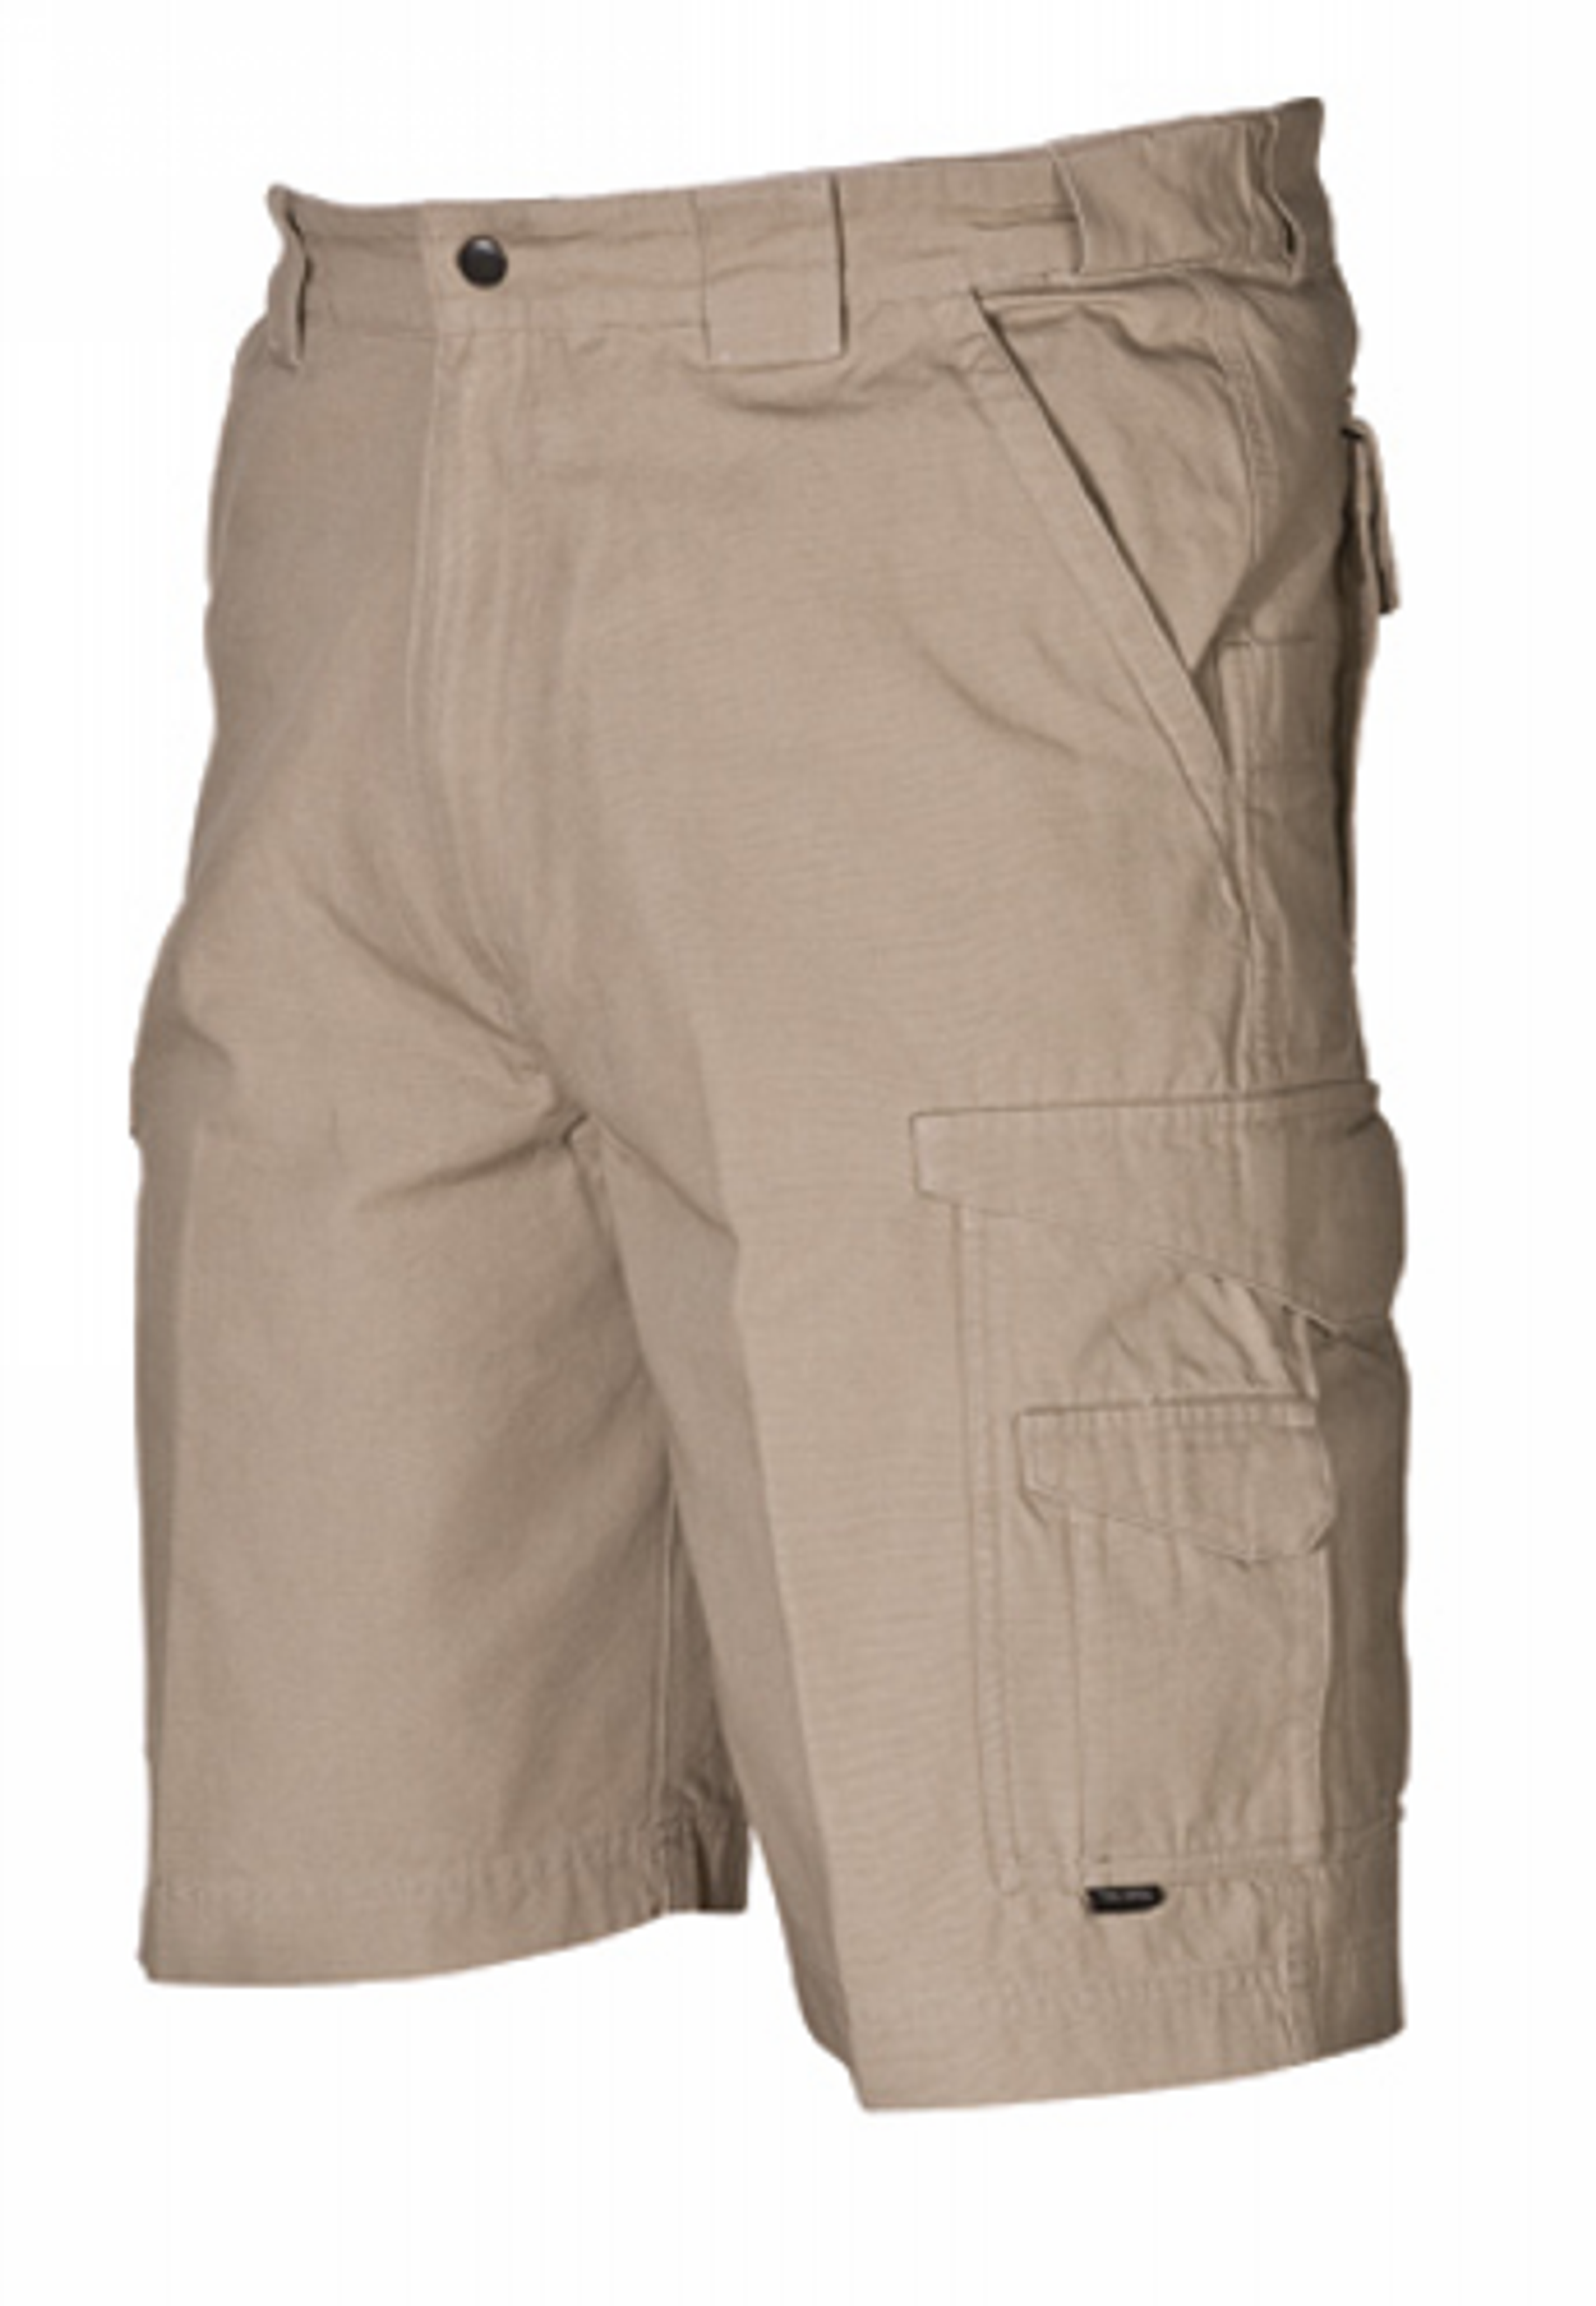 Original Tactical Shorts - KRTSP-4268003